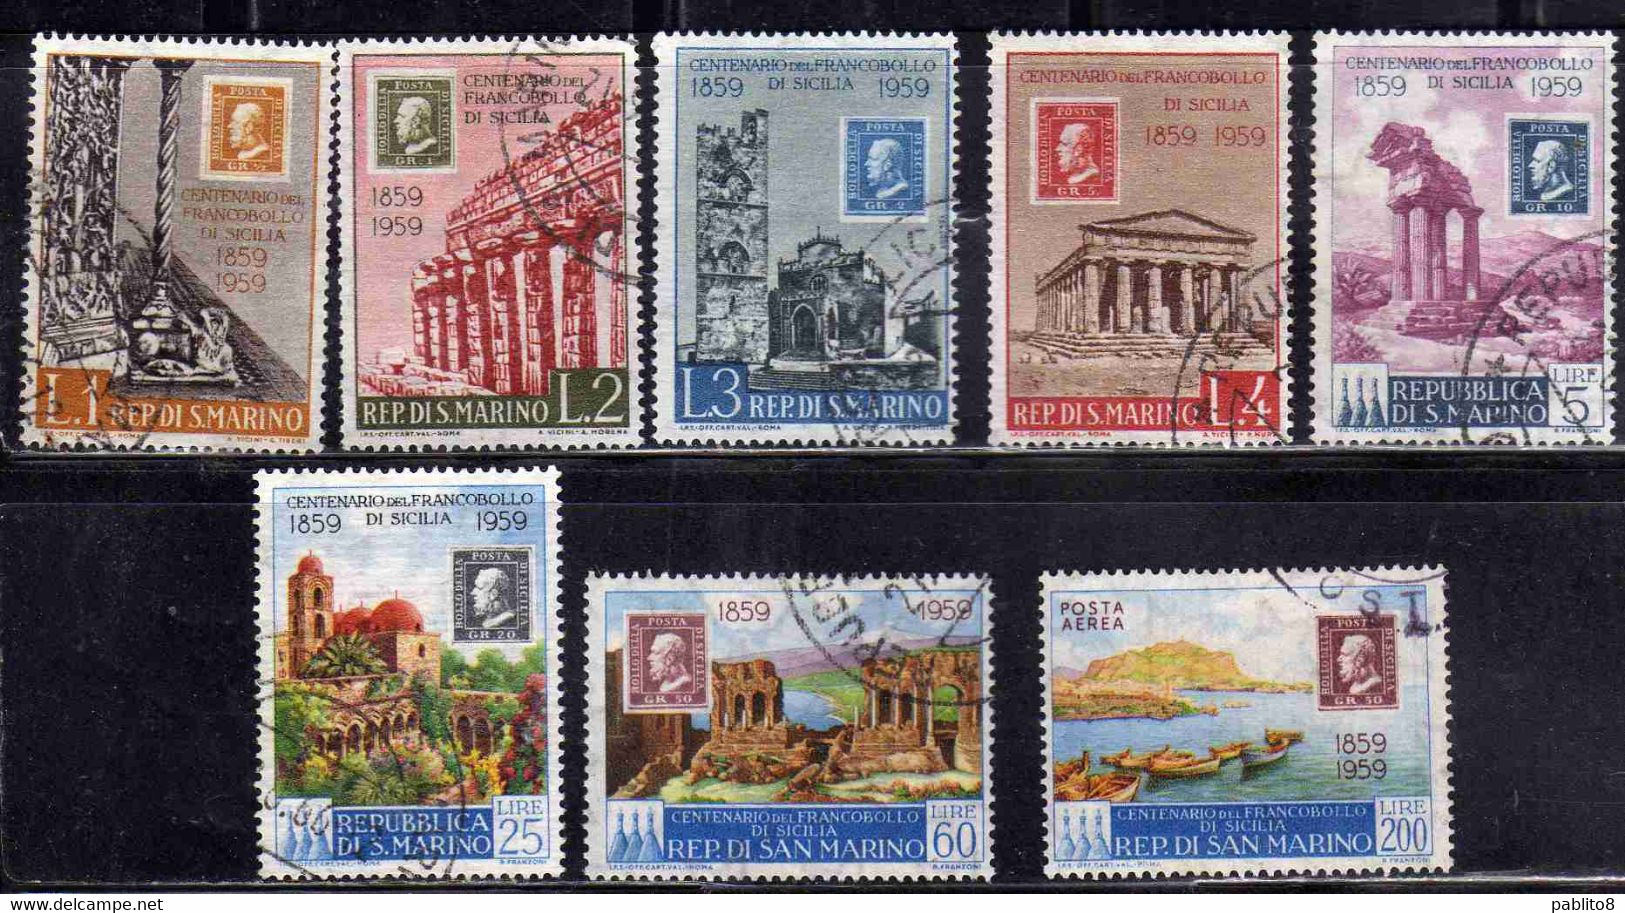 REPUBBLICA DI SAN MARINO 1959 CENTENARIO PRIMI FRANCOBOLLI SICILIA SICILY SERIA COMPLETA COMPLETE SETUSATO USED OBLITERE - Used Stamps